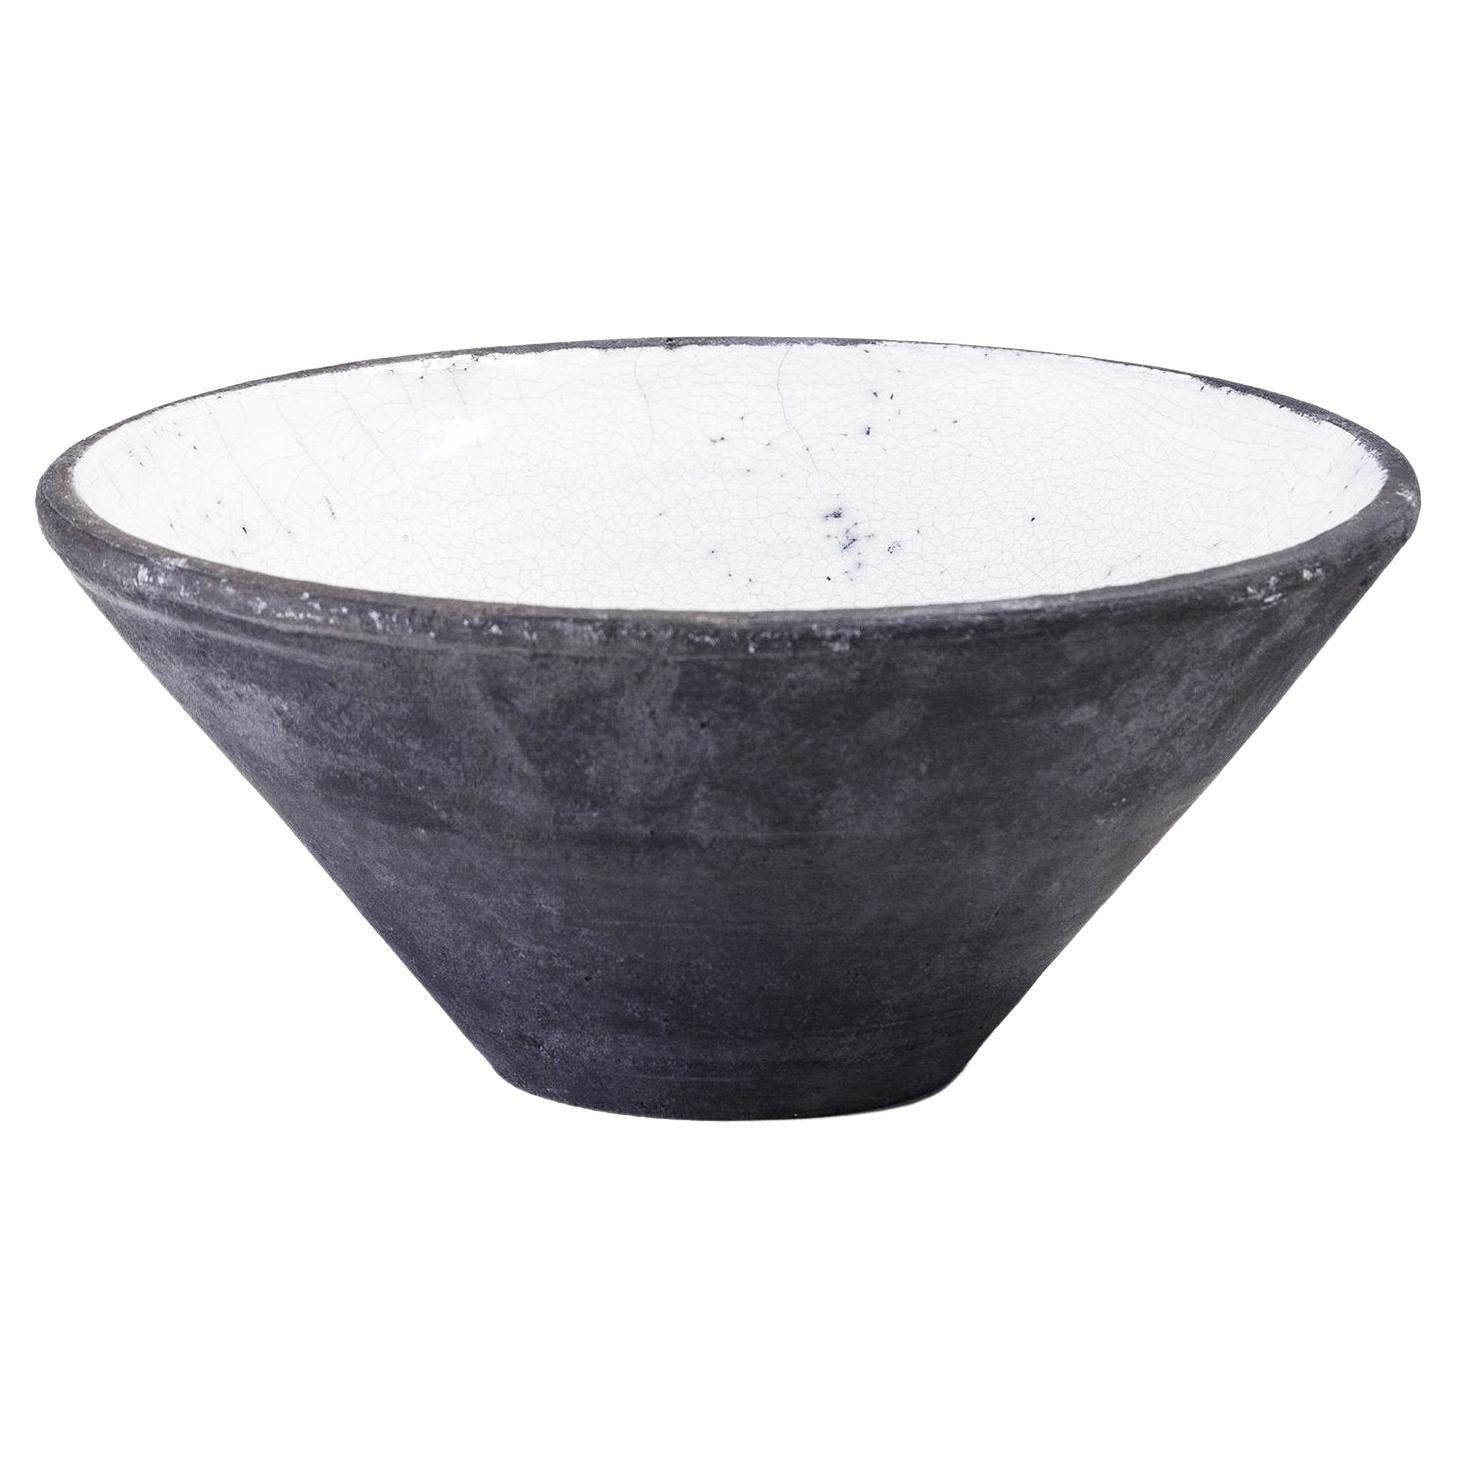 Japanese LAAB Wu Bowl Raku Ceramics Crackle Black White